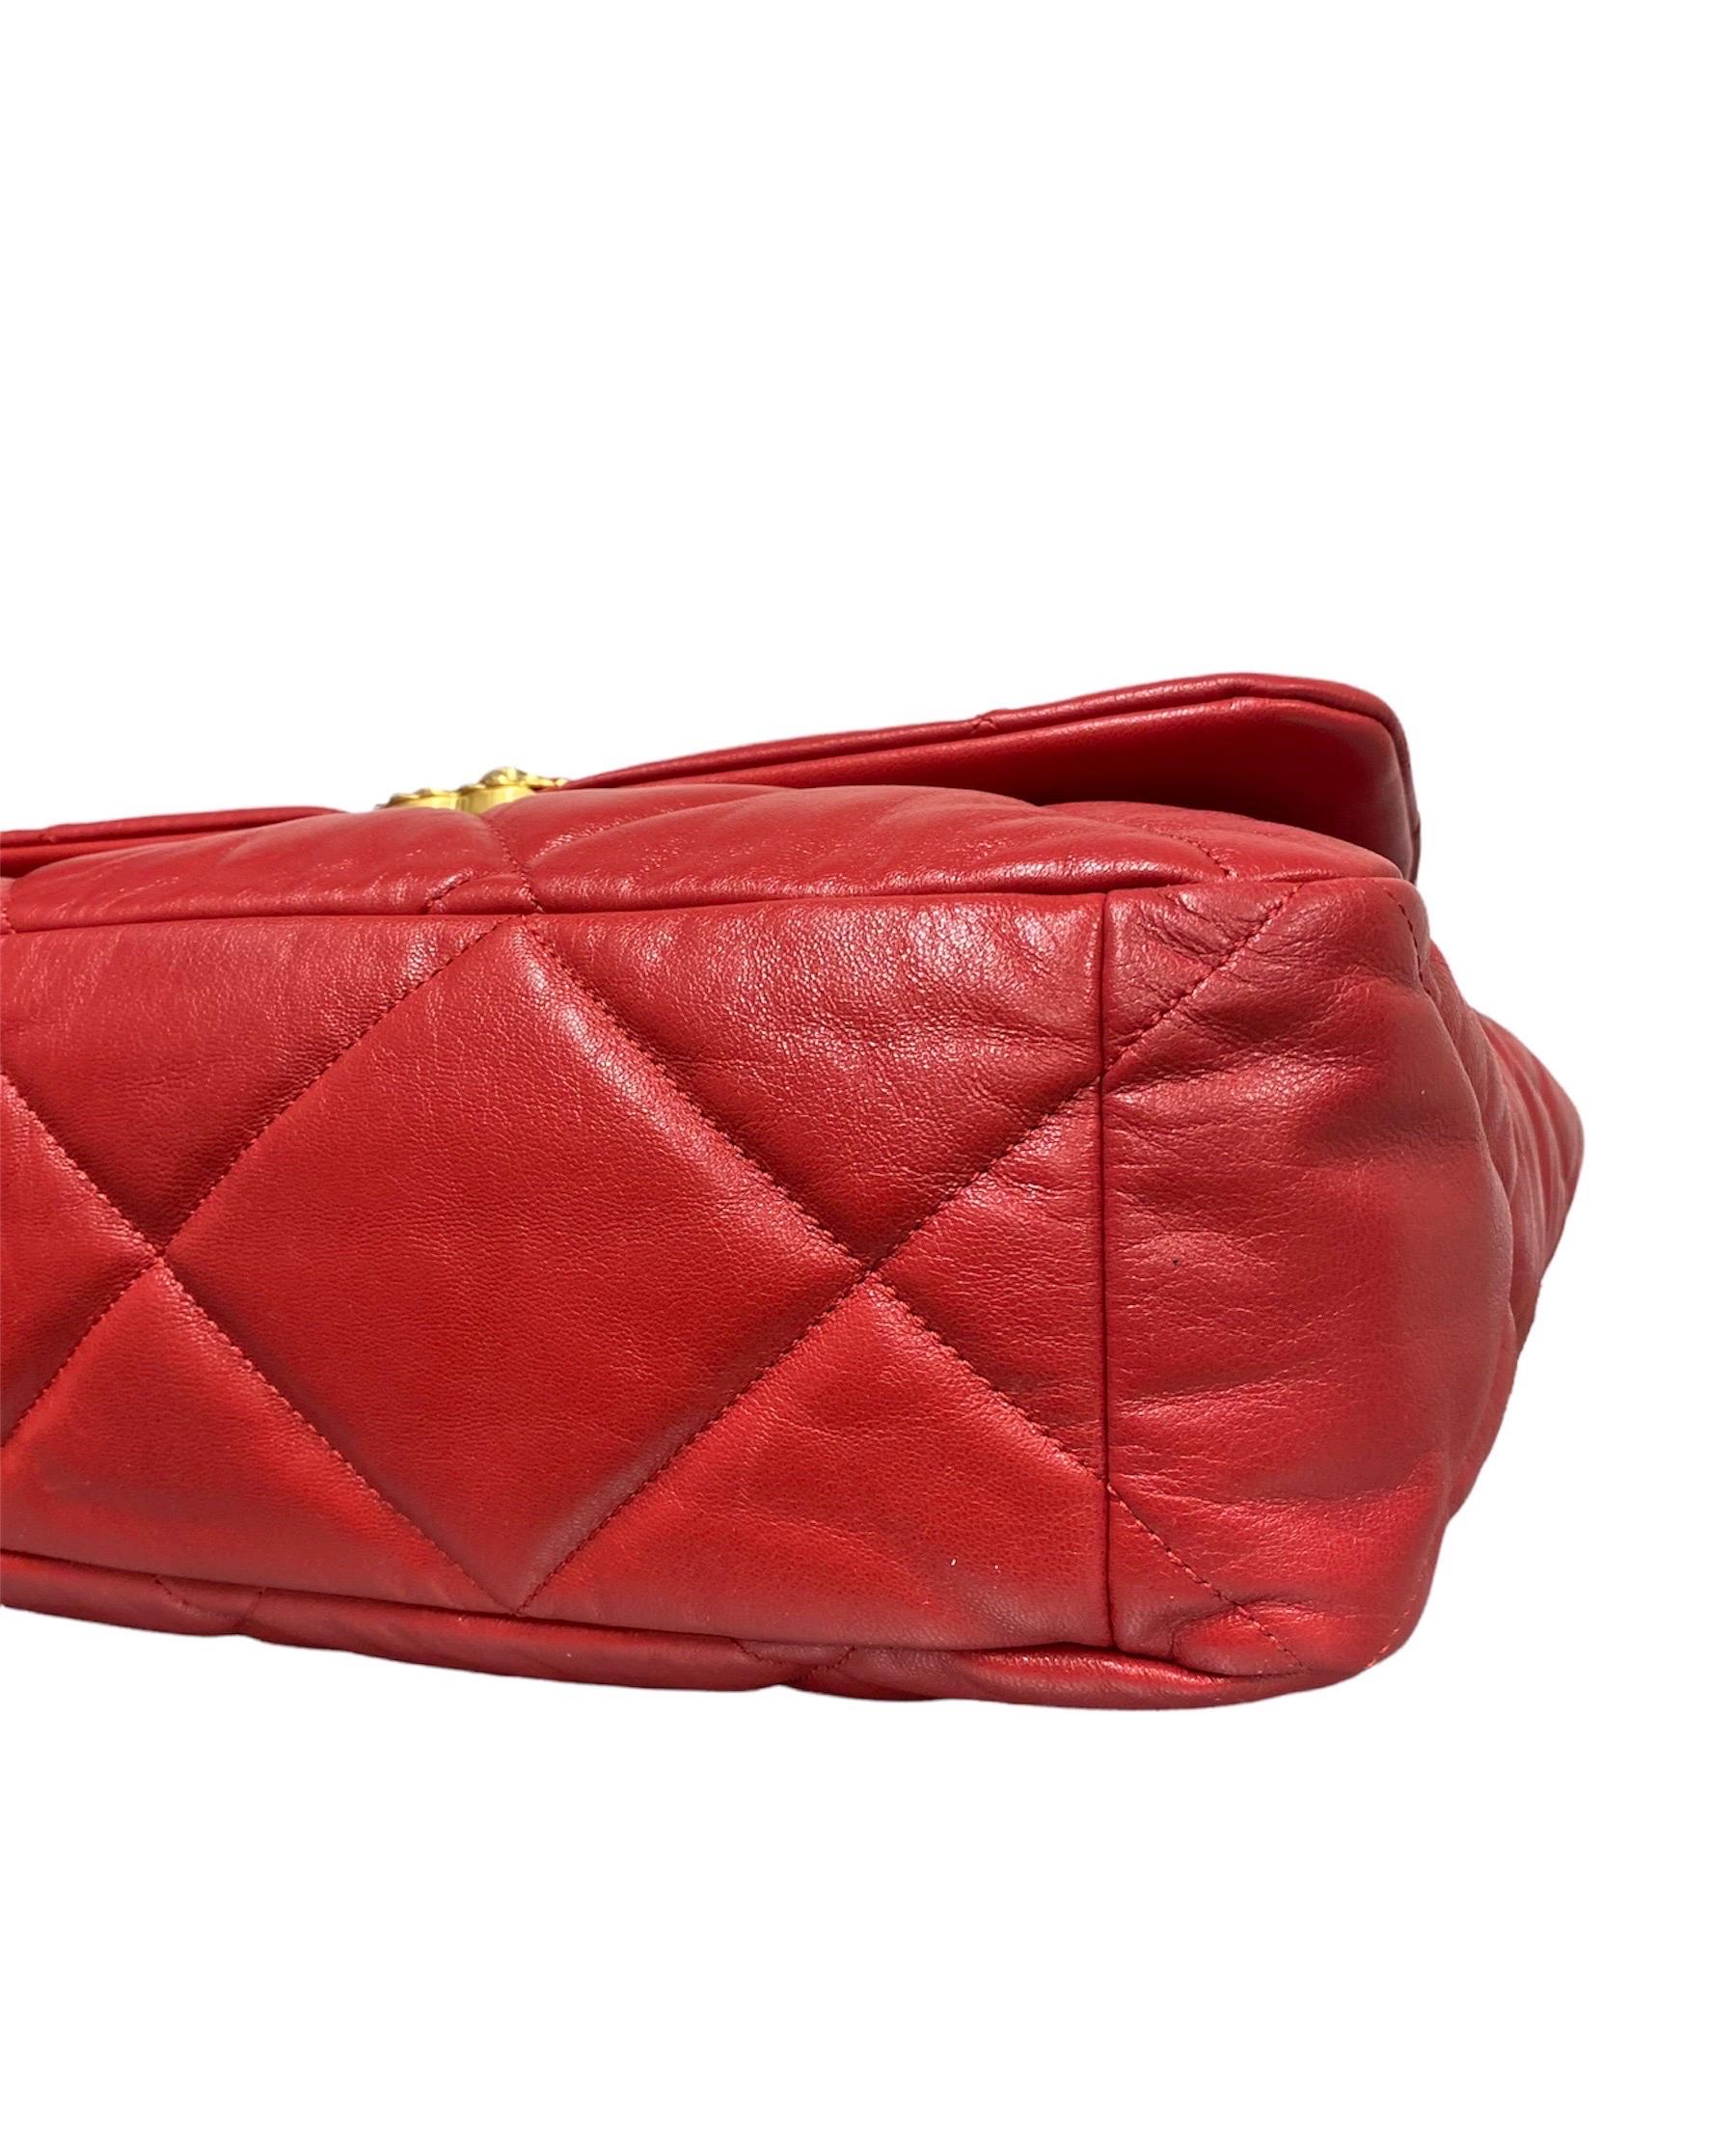 2019 Chanel 19 Red Shoulder Bag Big Size 1